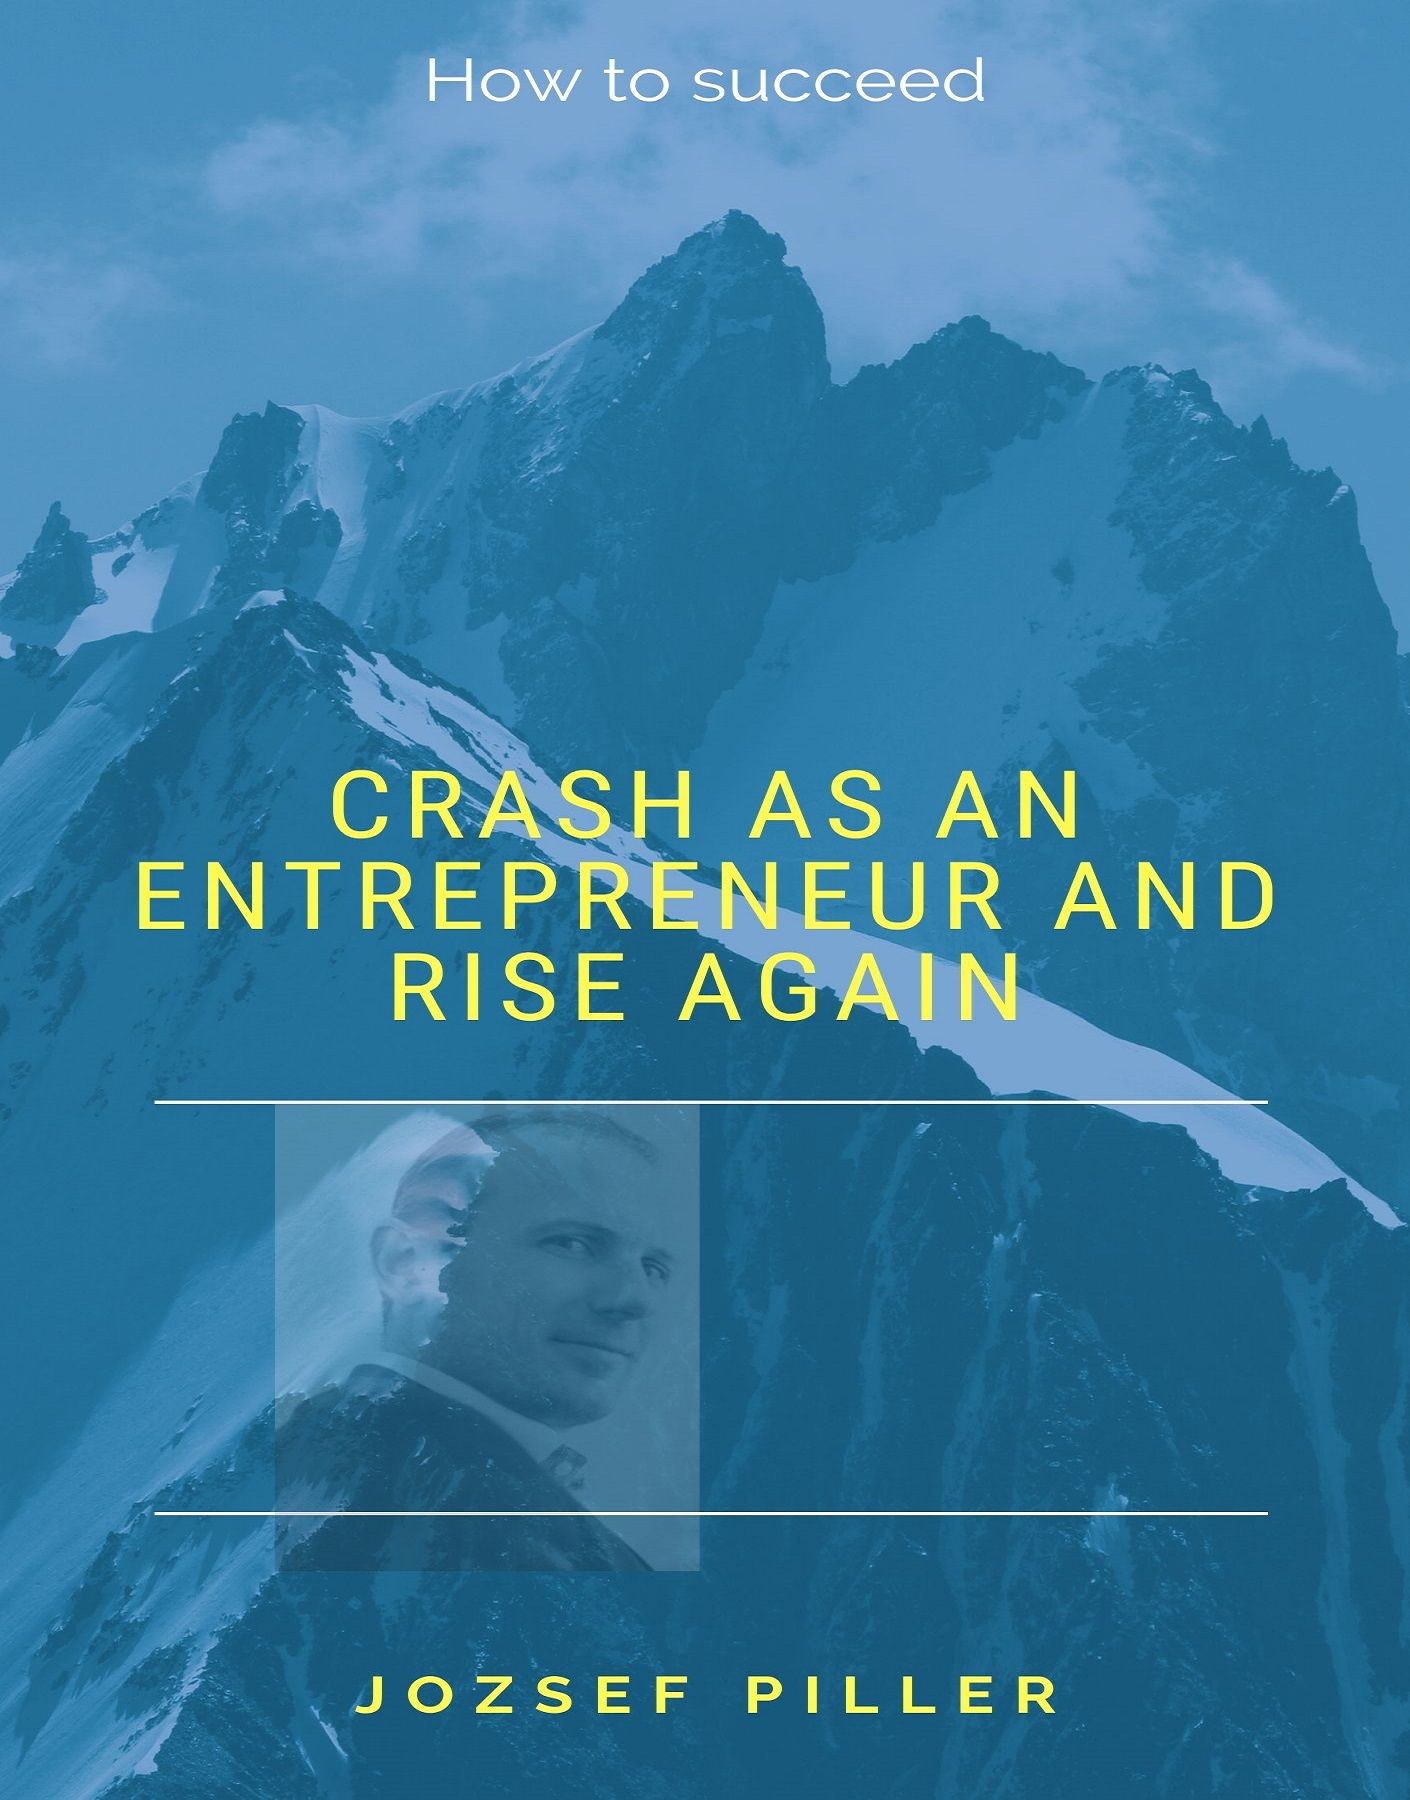 Crash as an Entrepreneur and Rise Again, lydbog af Jozsef Piller